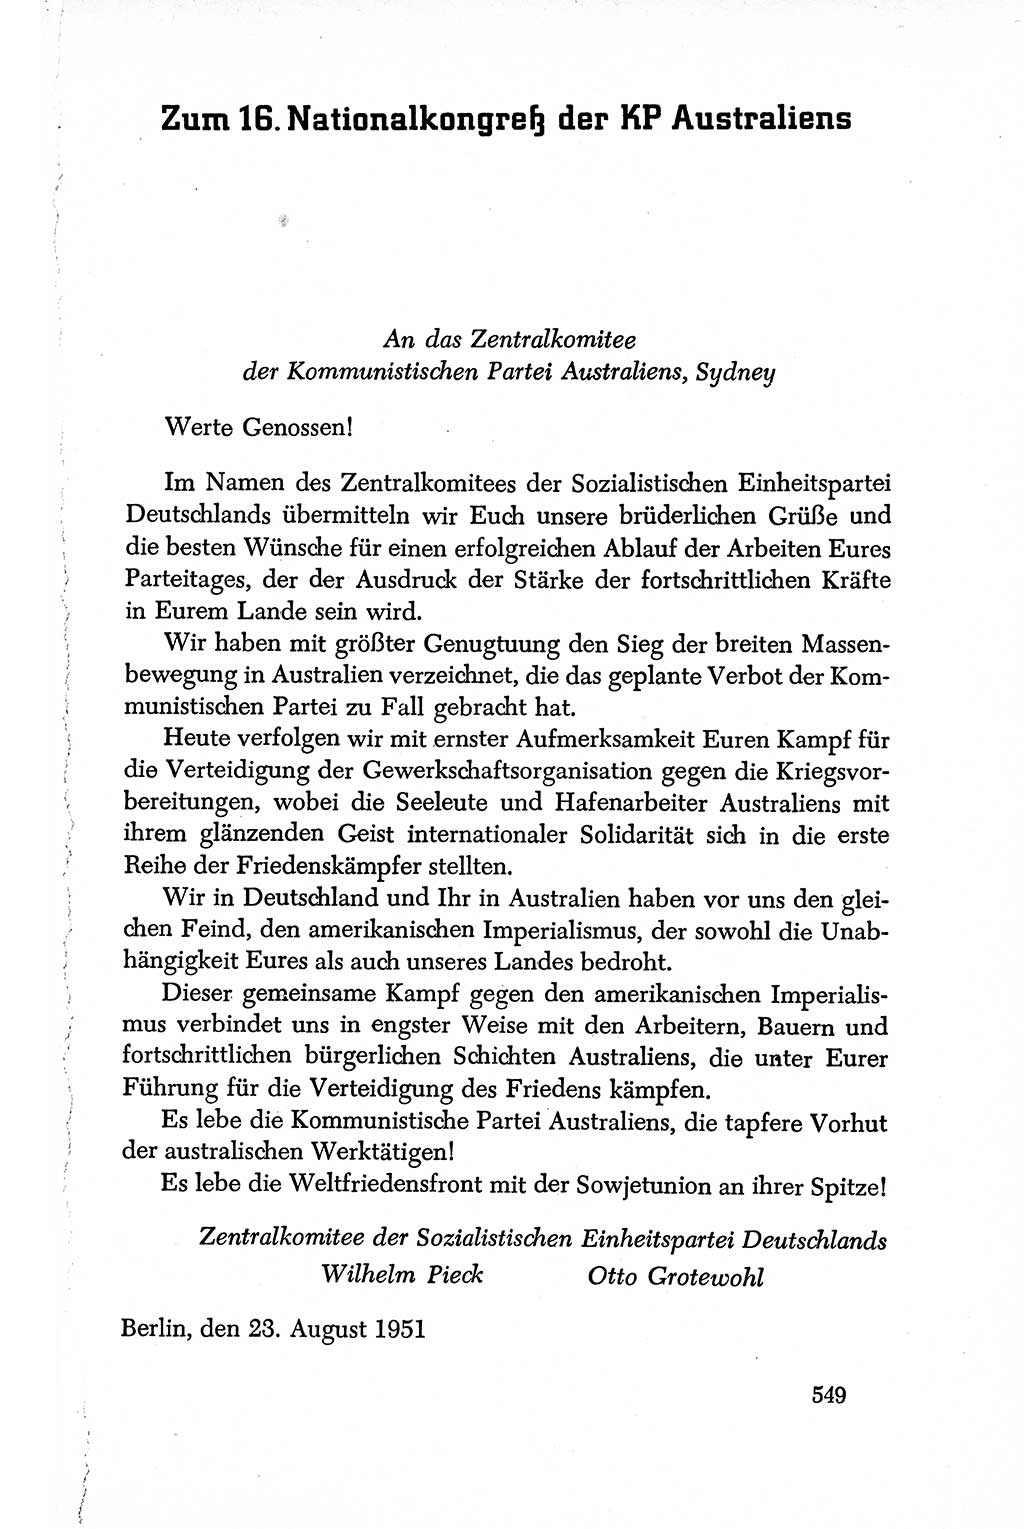 Dokumente der Sozialistischen Einheitspartei Deutschlands (SED) [Deutsche Demokratische Republik (DDR)] 1950-1952, Seite 549 (Dok. SED DDR 1950-1952, S. 549)